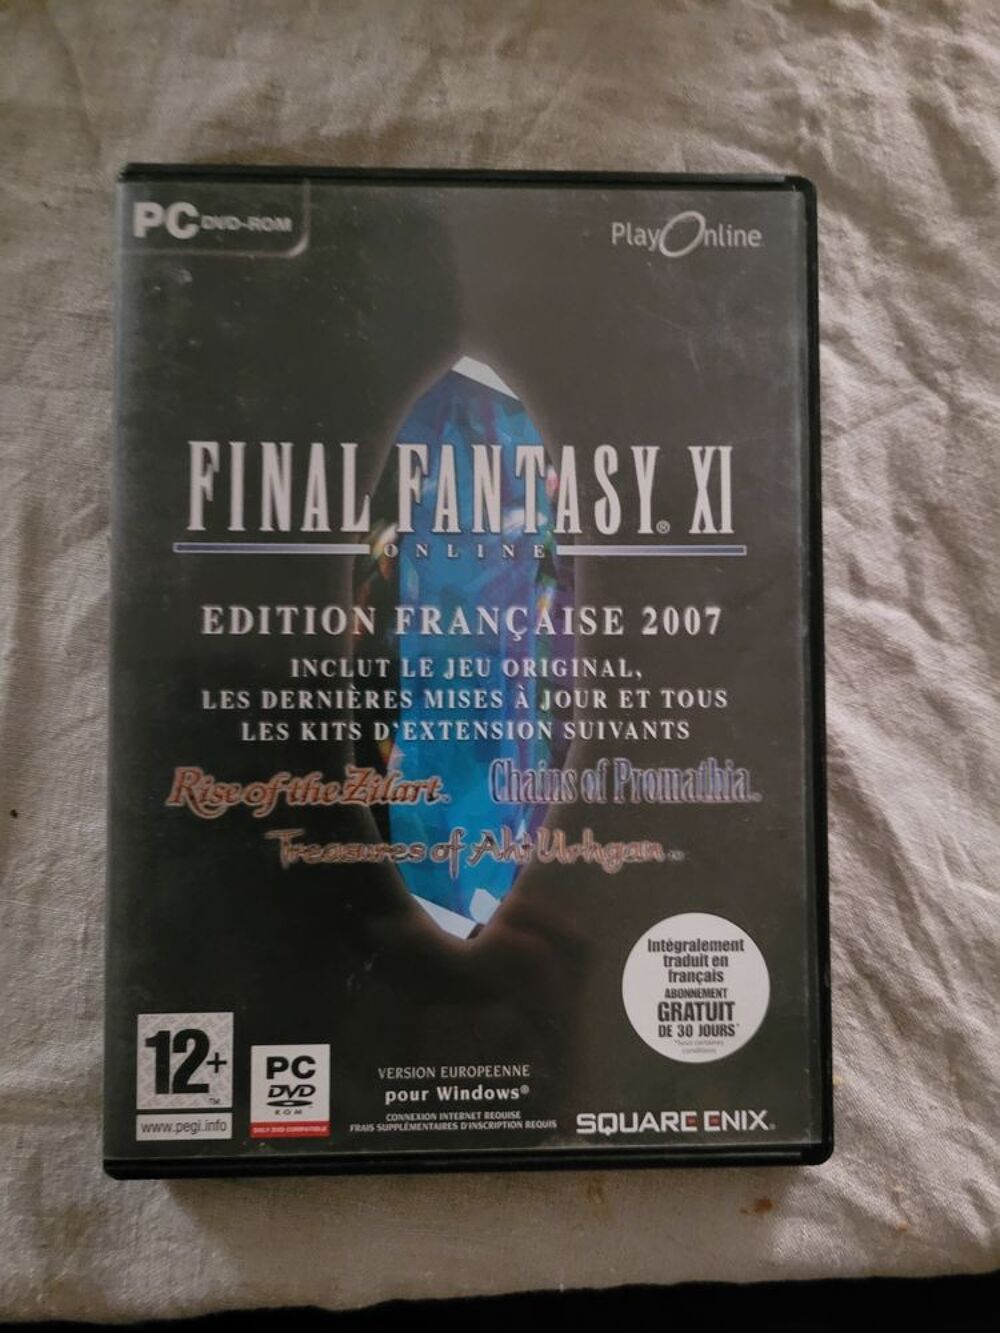 Jeu PC Final Fantasy XI
Consoles et jeux vidos